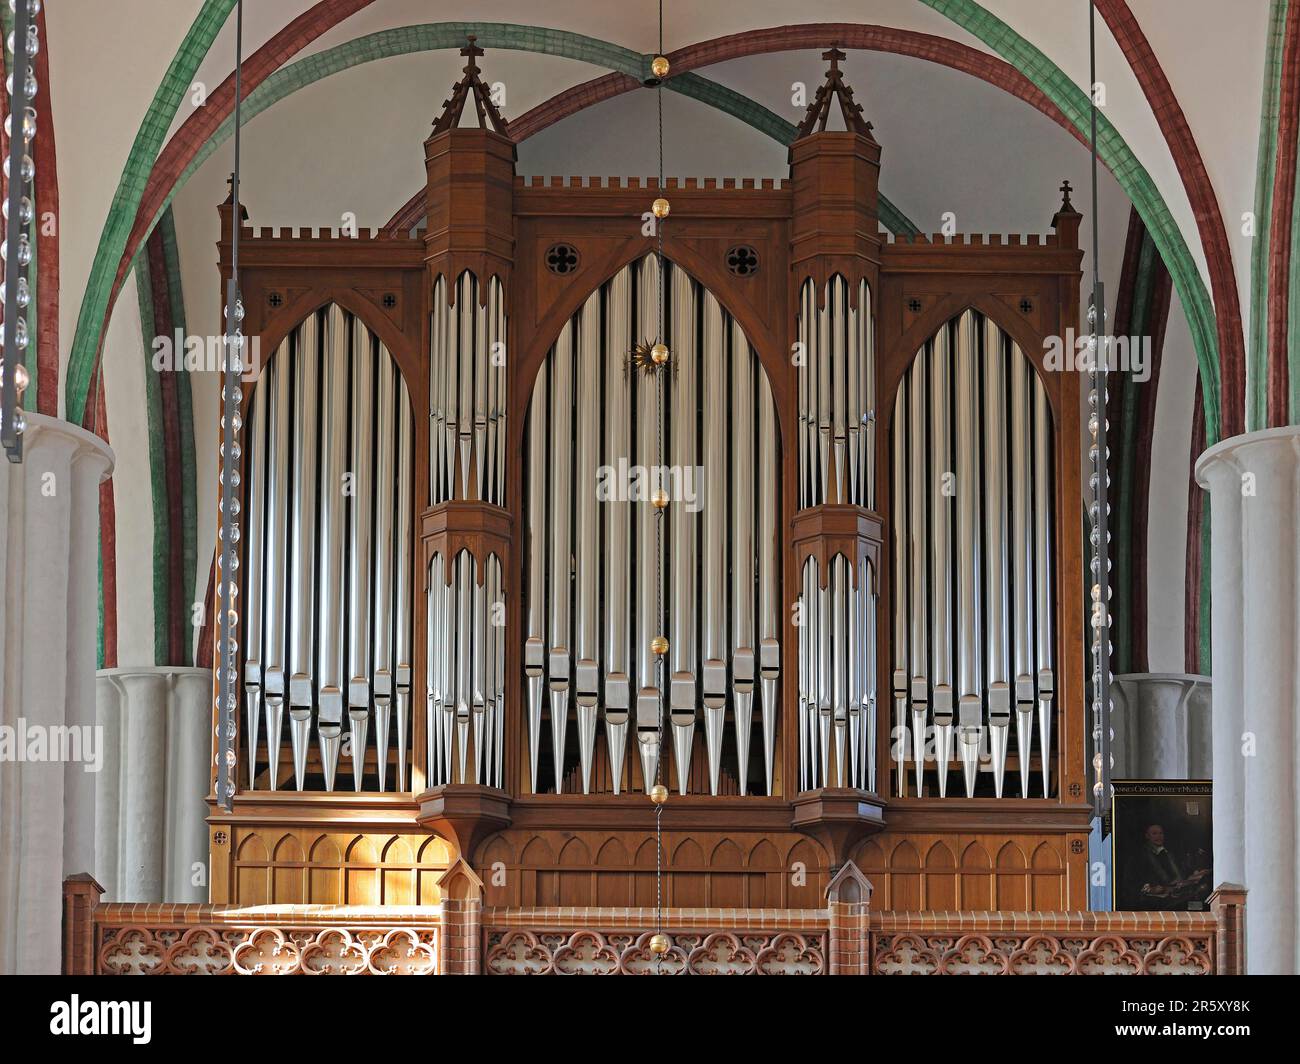 Orgue de Jehmlich, église, orgue, orgue d'église, tuyaux d'orgue, Orgue Jehmlich, Nikolaikirche, Berlin, Allemagne Banque D'Images